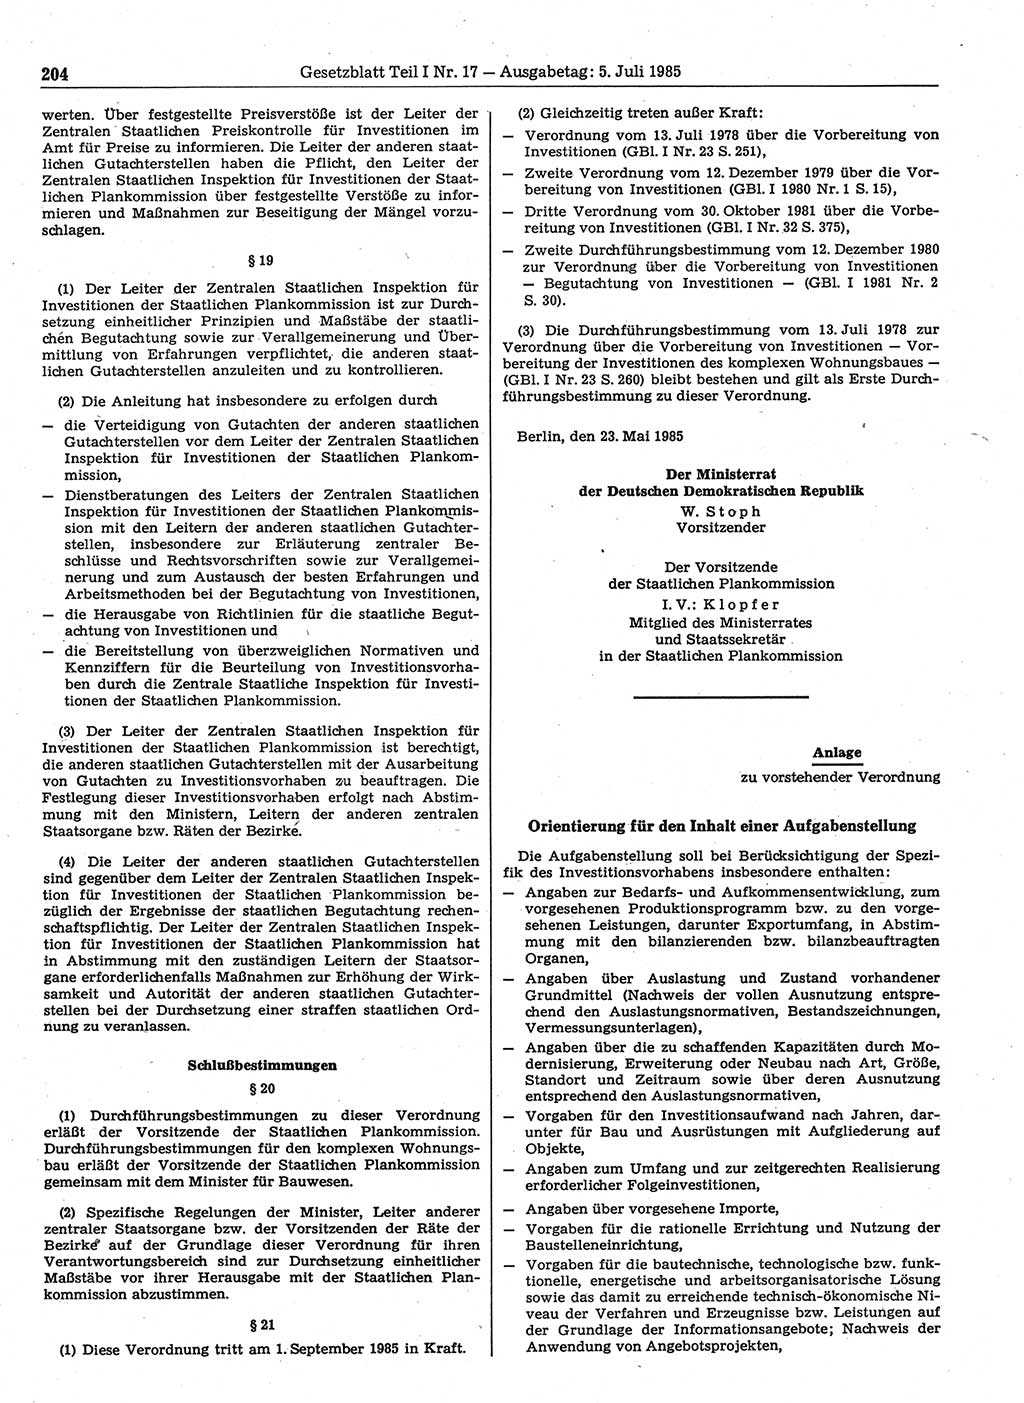 Gesetzblatt (GBl.) der Deutschen Demokratischen Republik (DDR) Teil Ⅰ 1985, Seite 204 (GBl. DDR Ⅰ 1985, S. 204)